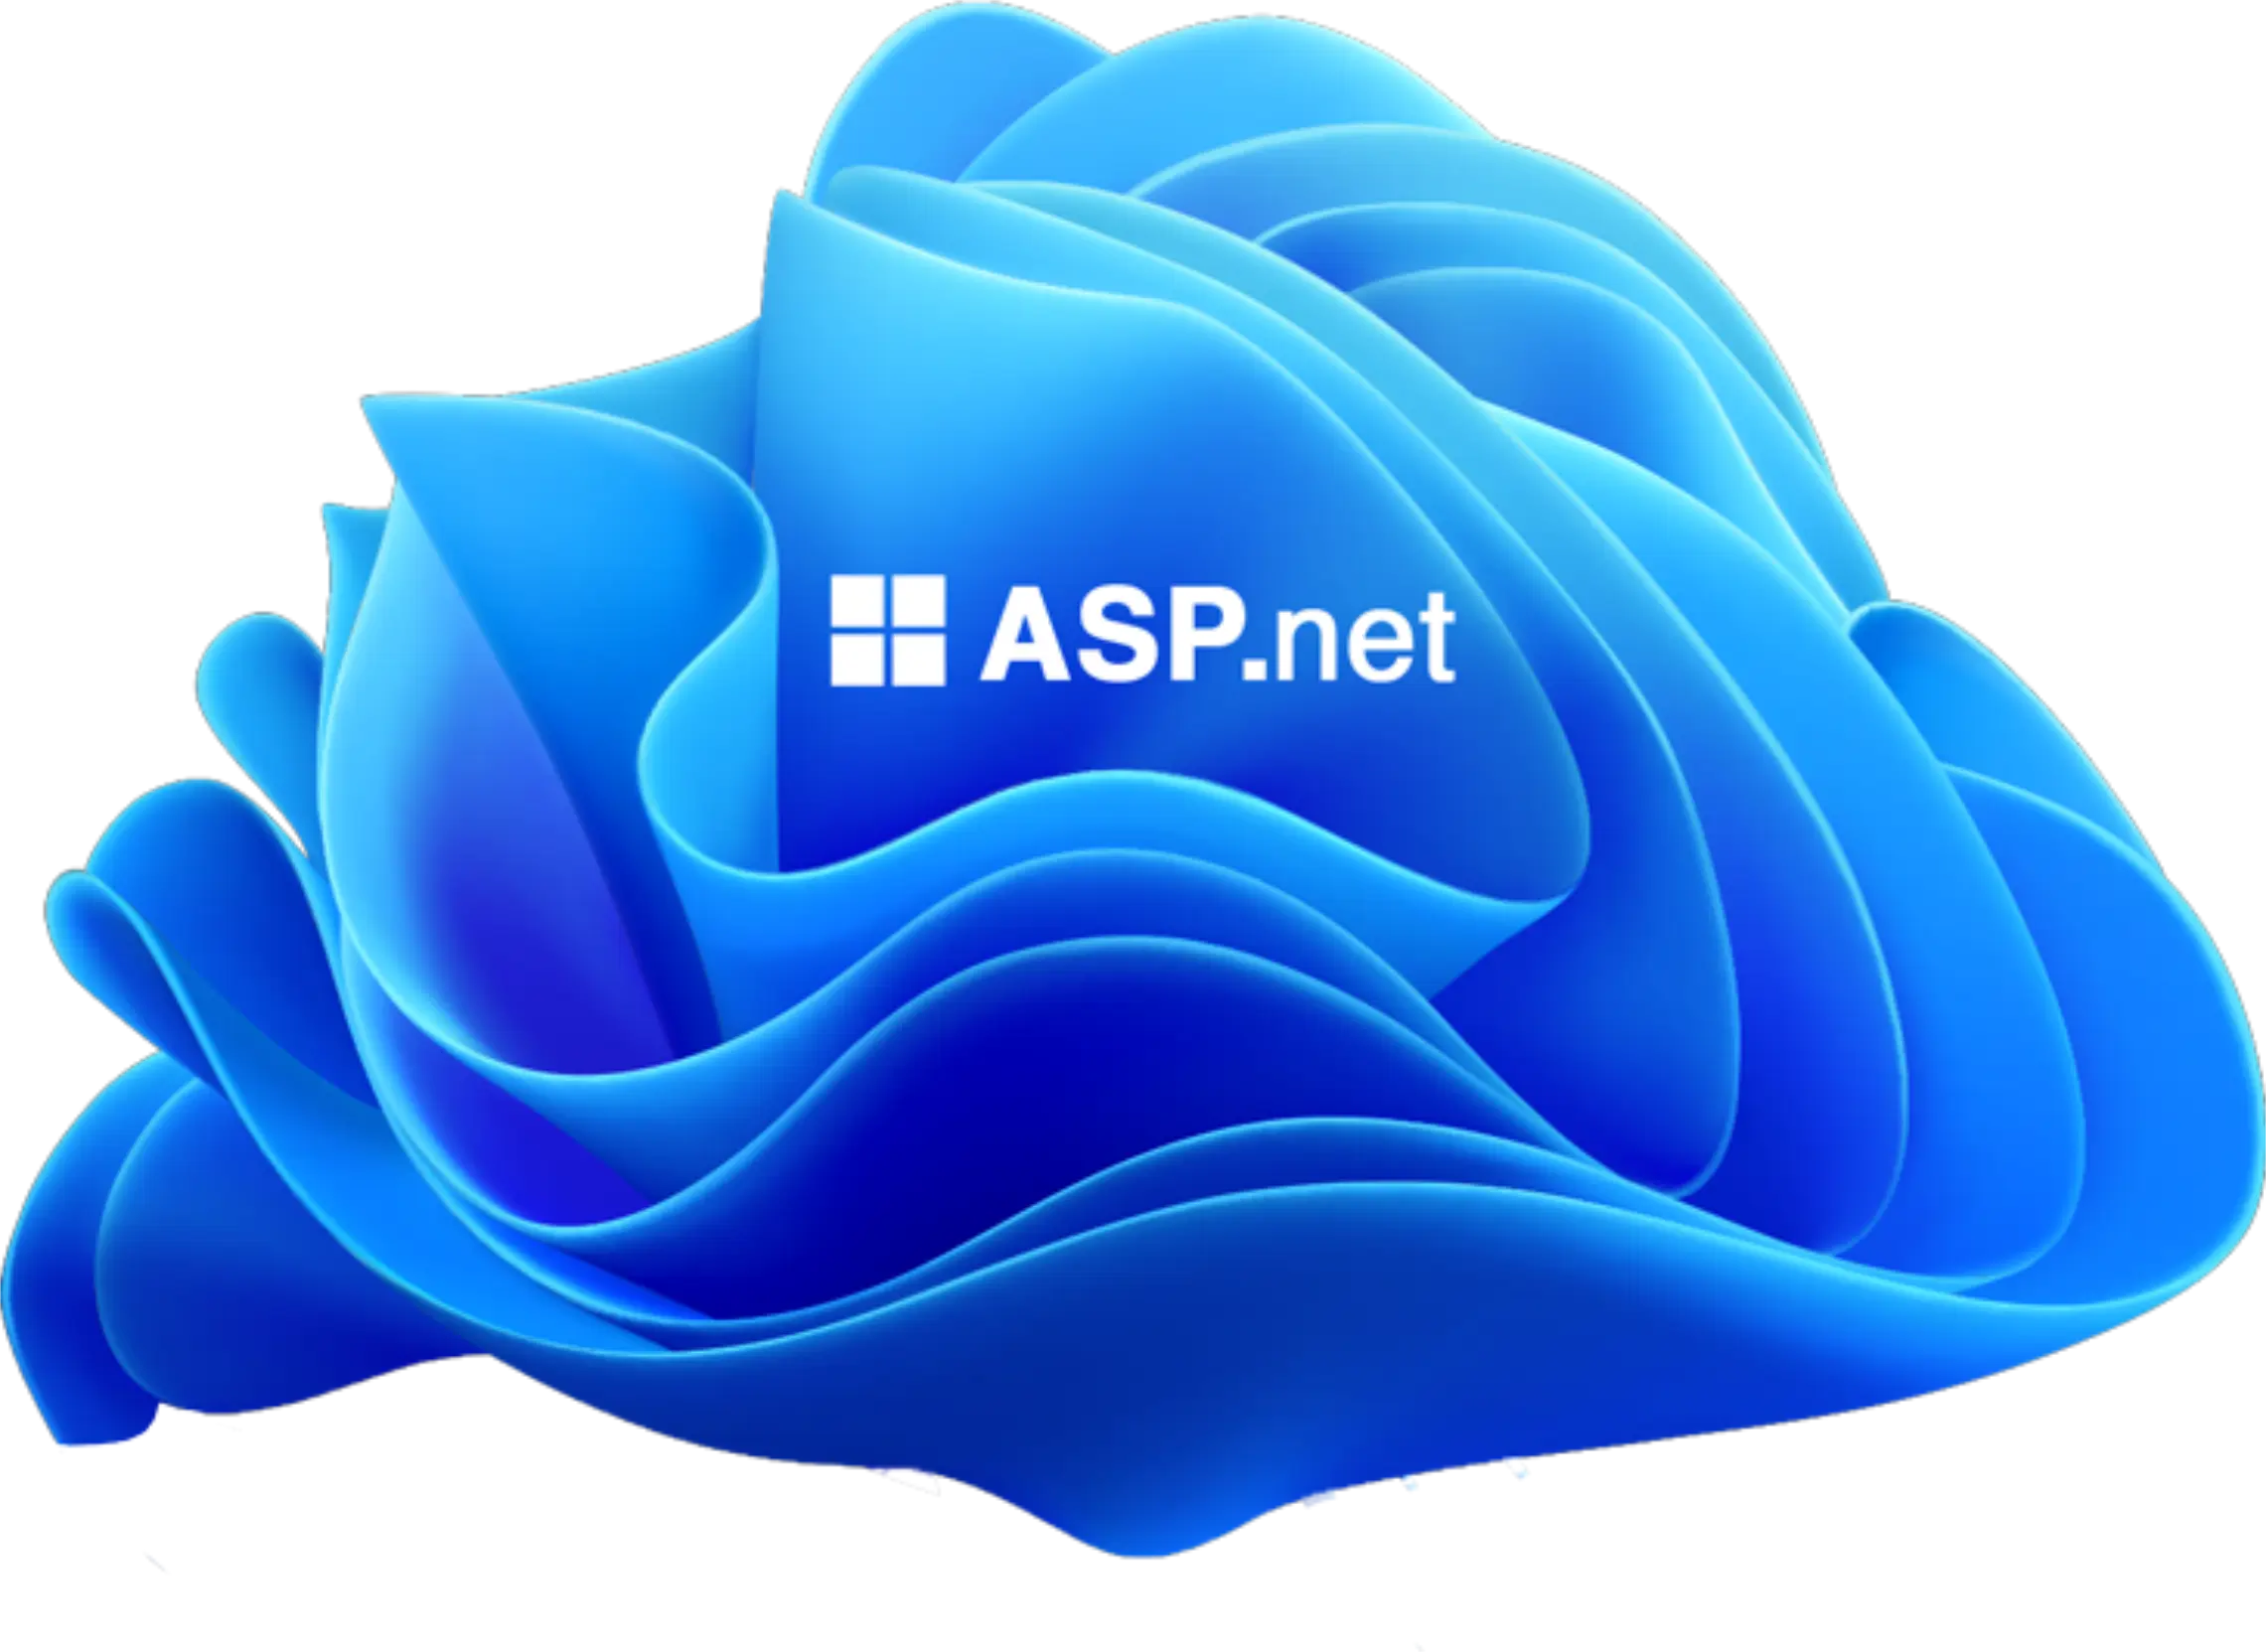 ASP dot net banner